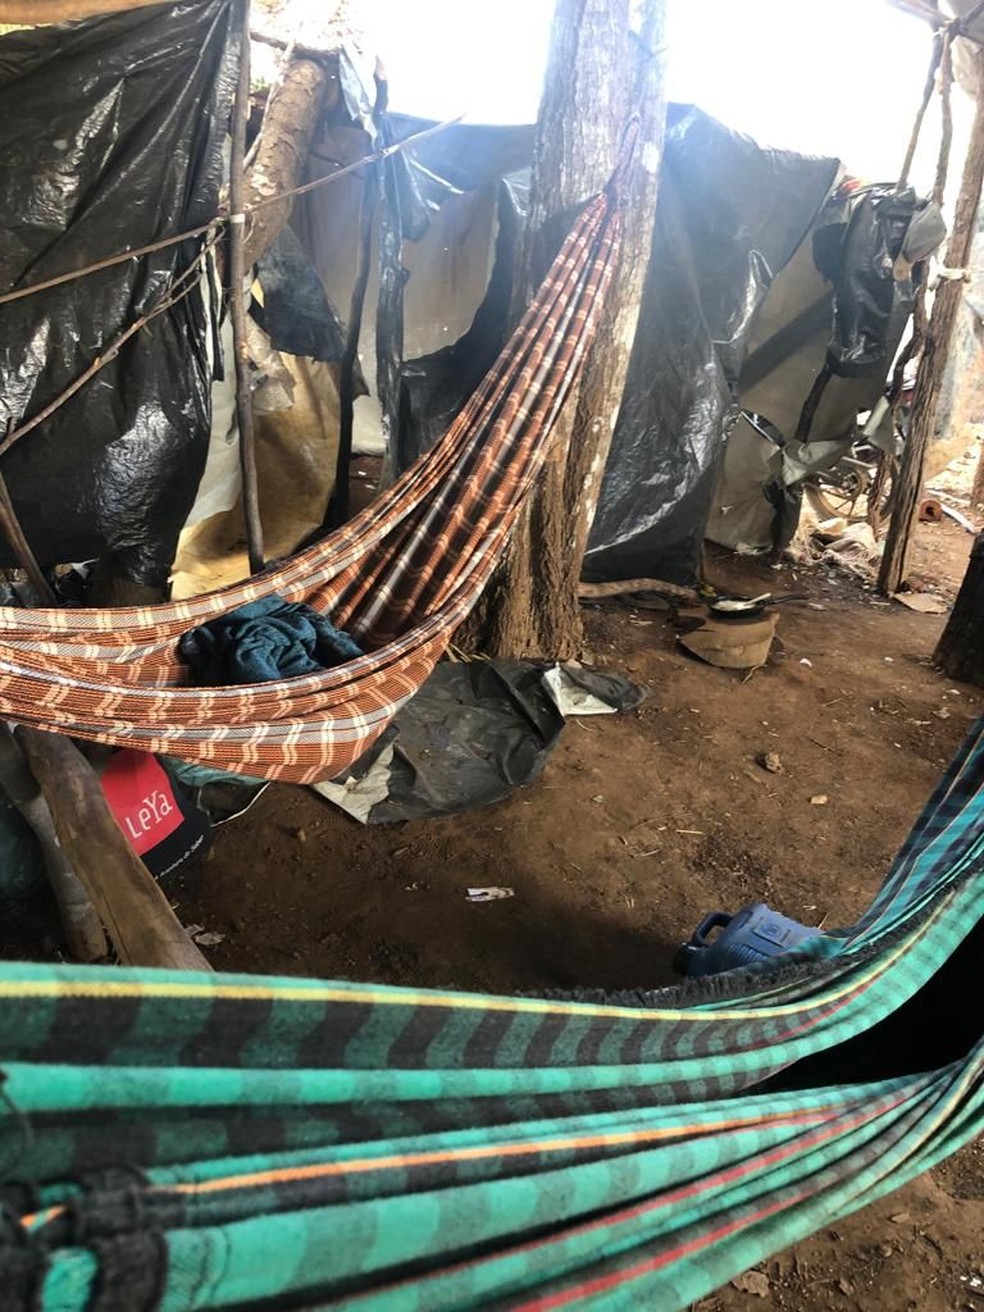 Vinte e seis trabalhadores são resgatados de condição análoga à de escravo no interior do Maranhão — Foto: Divulgação/Polícia Civil do Maranhão